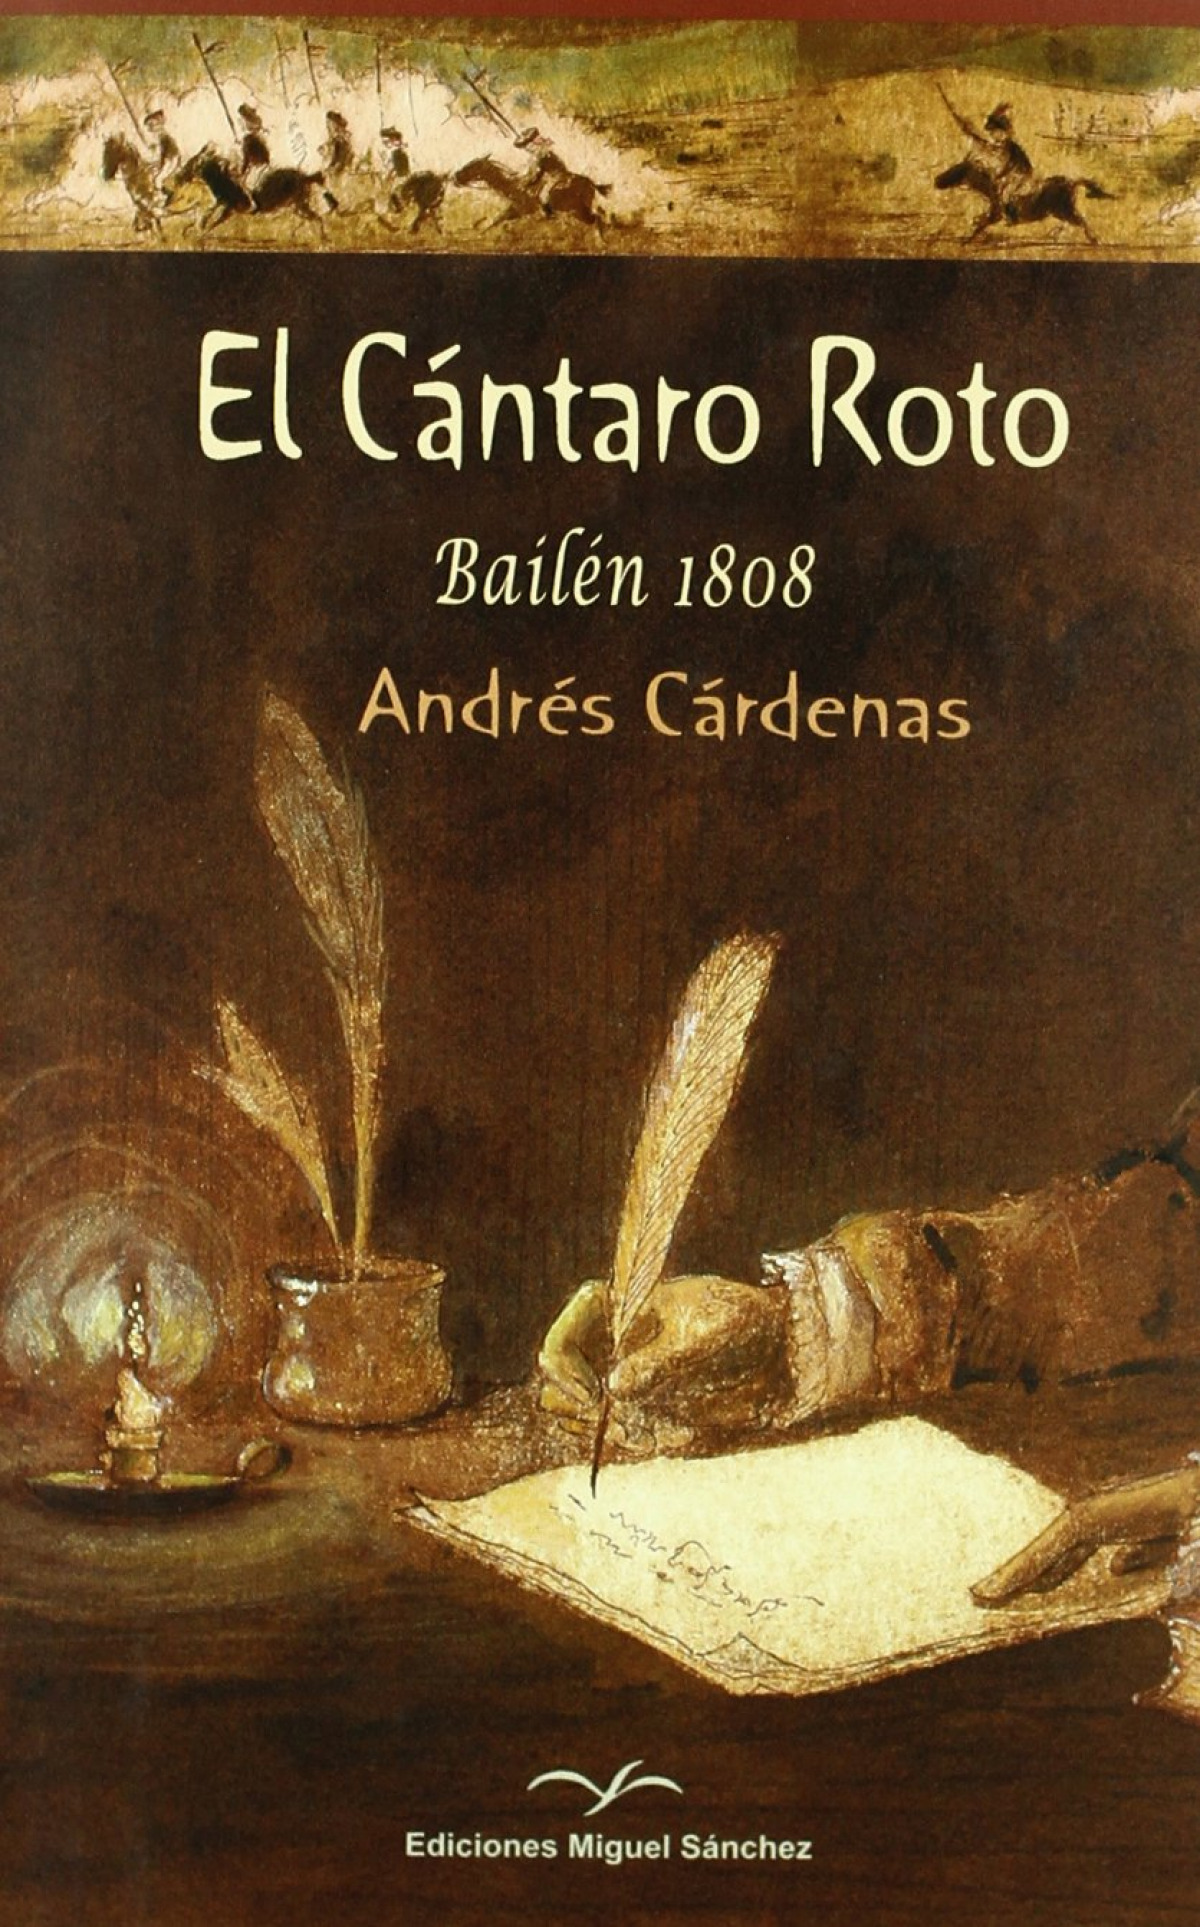 El cántaro roto Bailén 1808 - Cárdenas, Andrés                                  Ediciones Miguel Sánchez